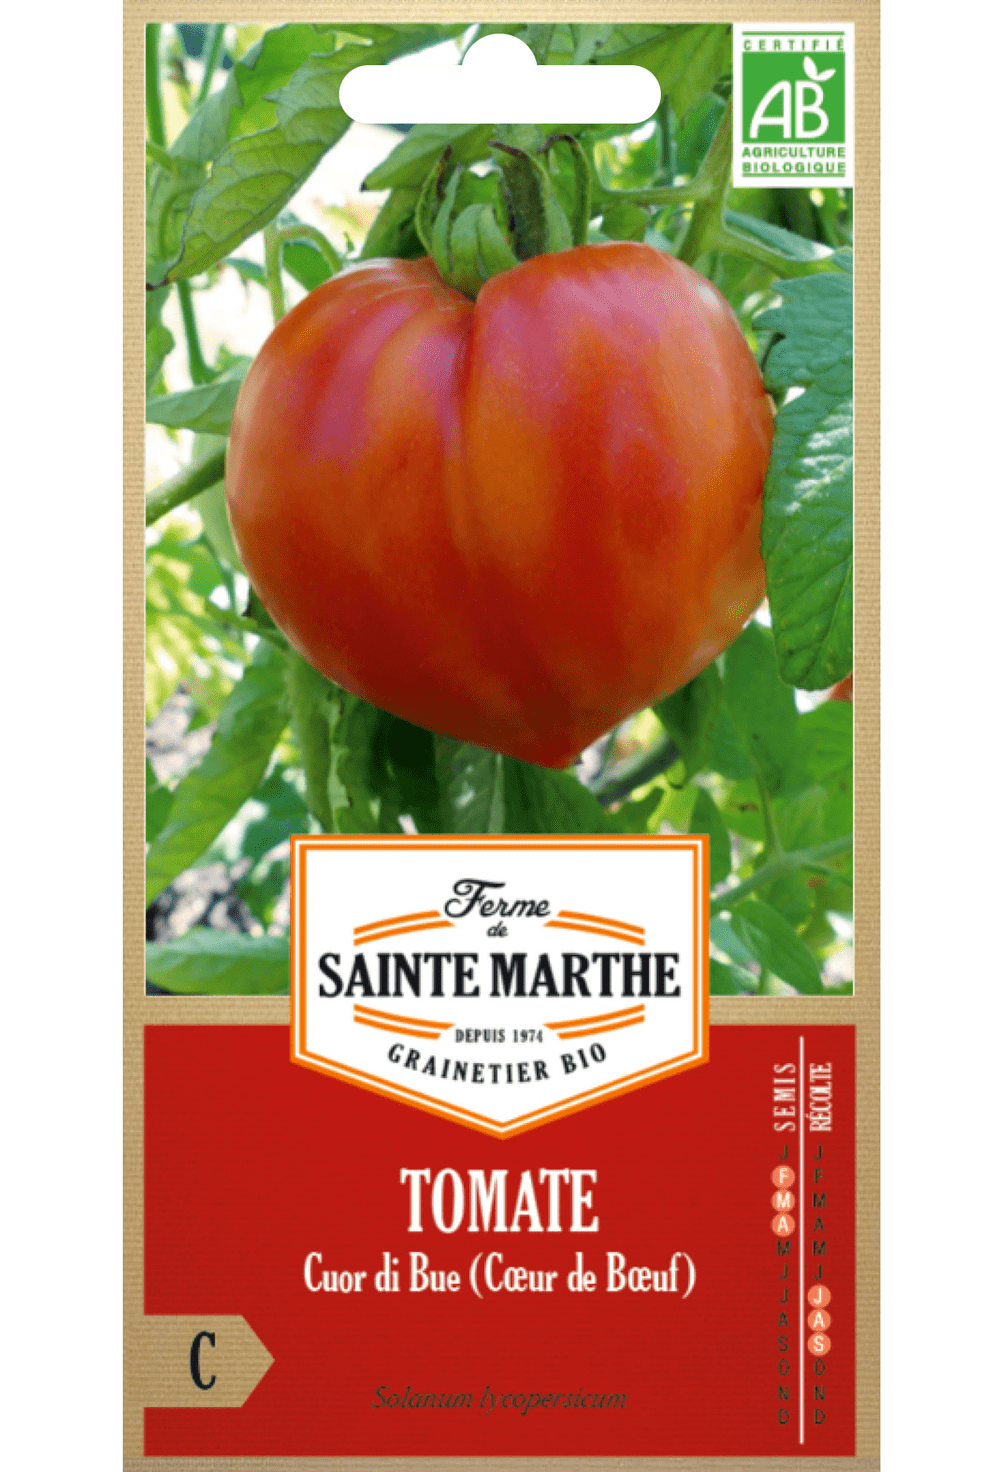 Tomate Cuor di Bue (Coeur de Boeuf)